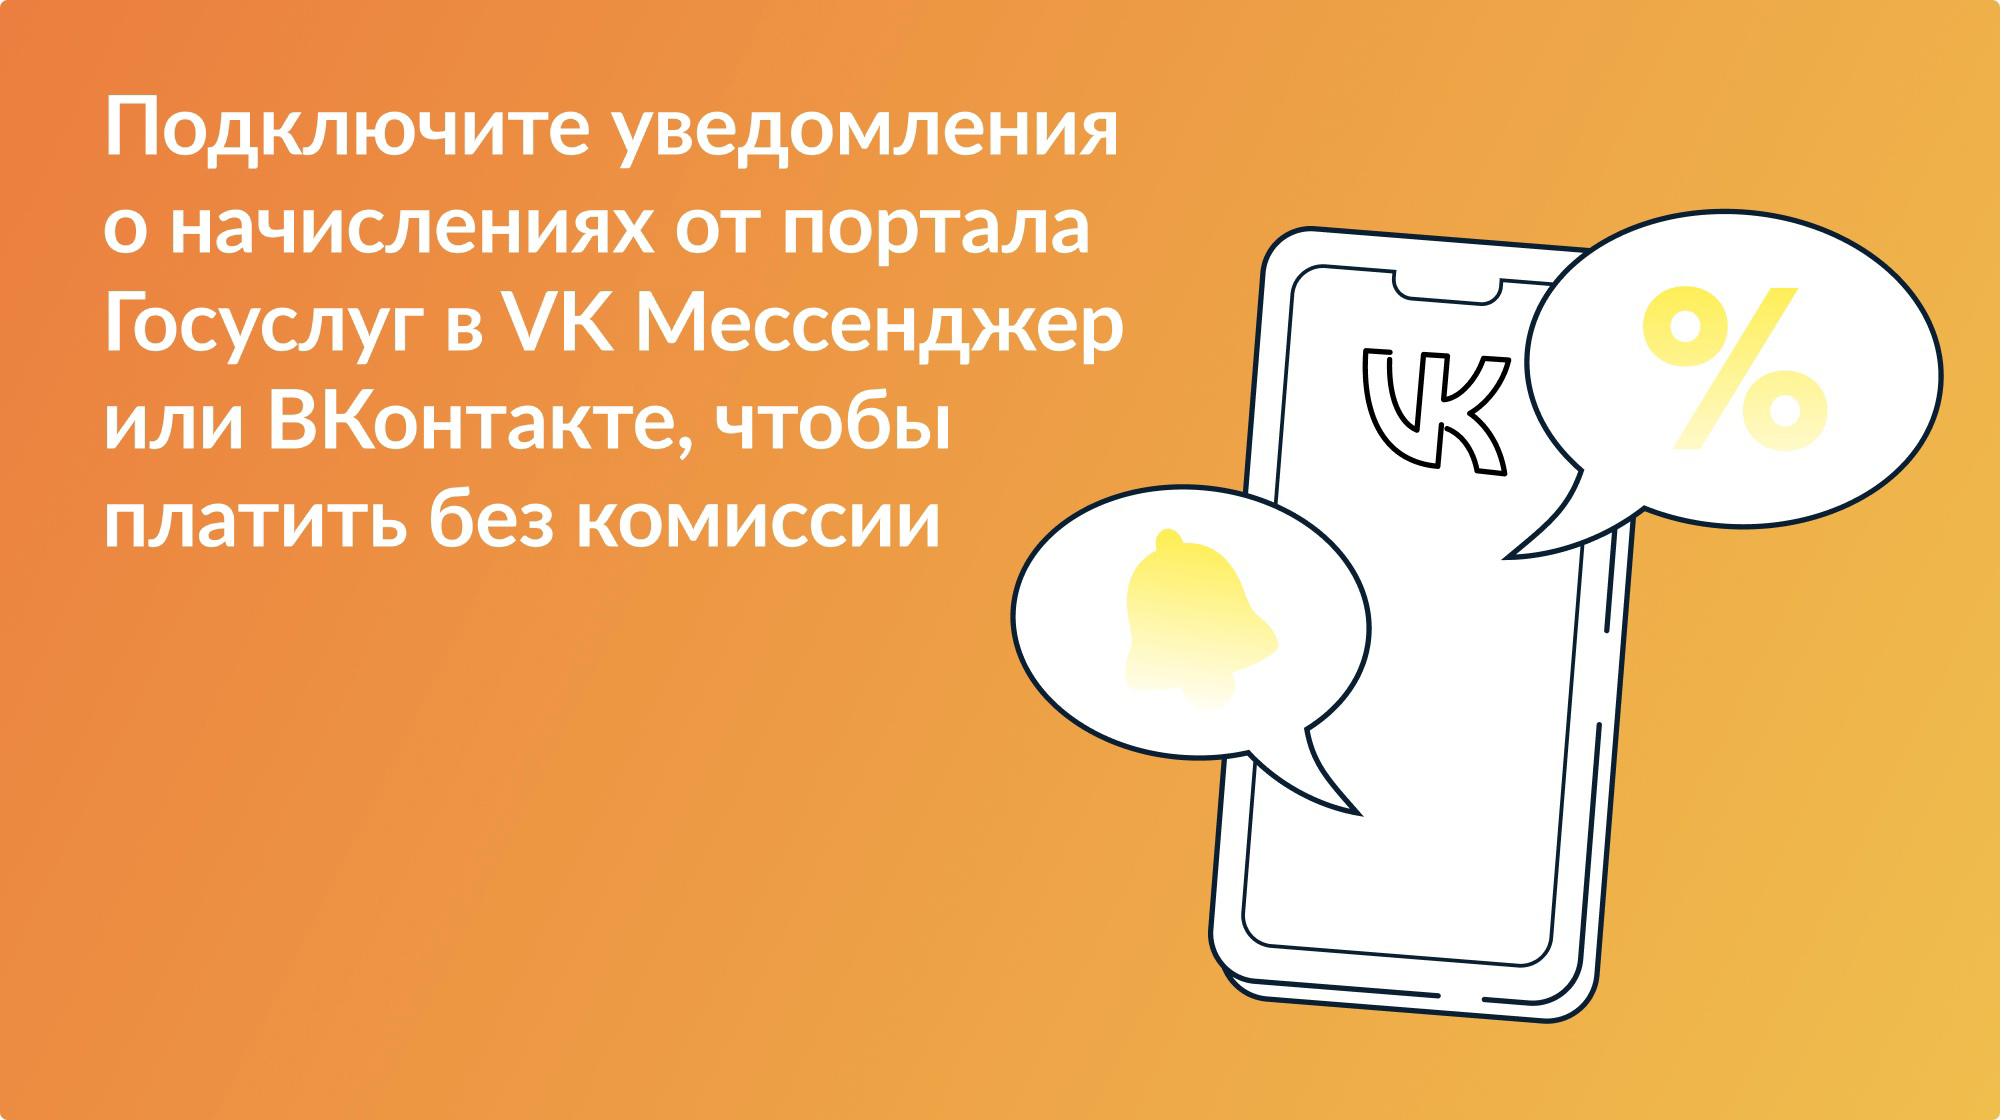 Подключайте уведомления и оплачивайте начисления за детские сады и школьные секции без комиссии в ВКонтакте или ВК Мессенджере!.